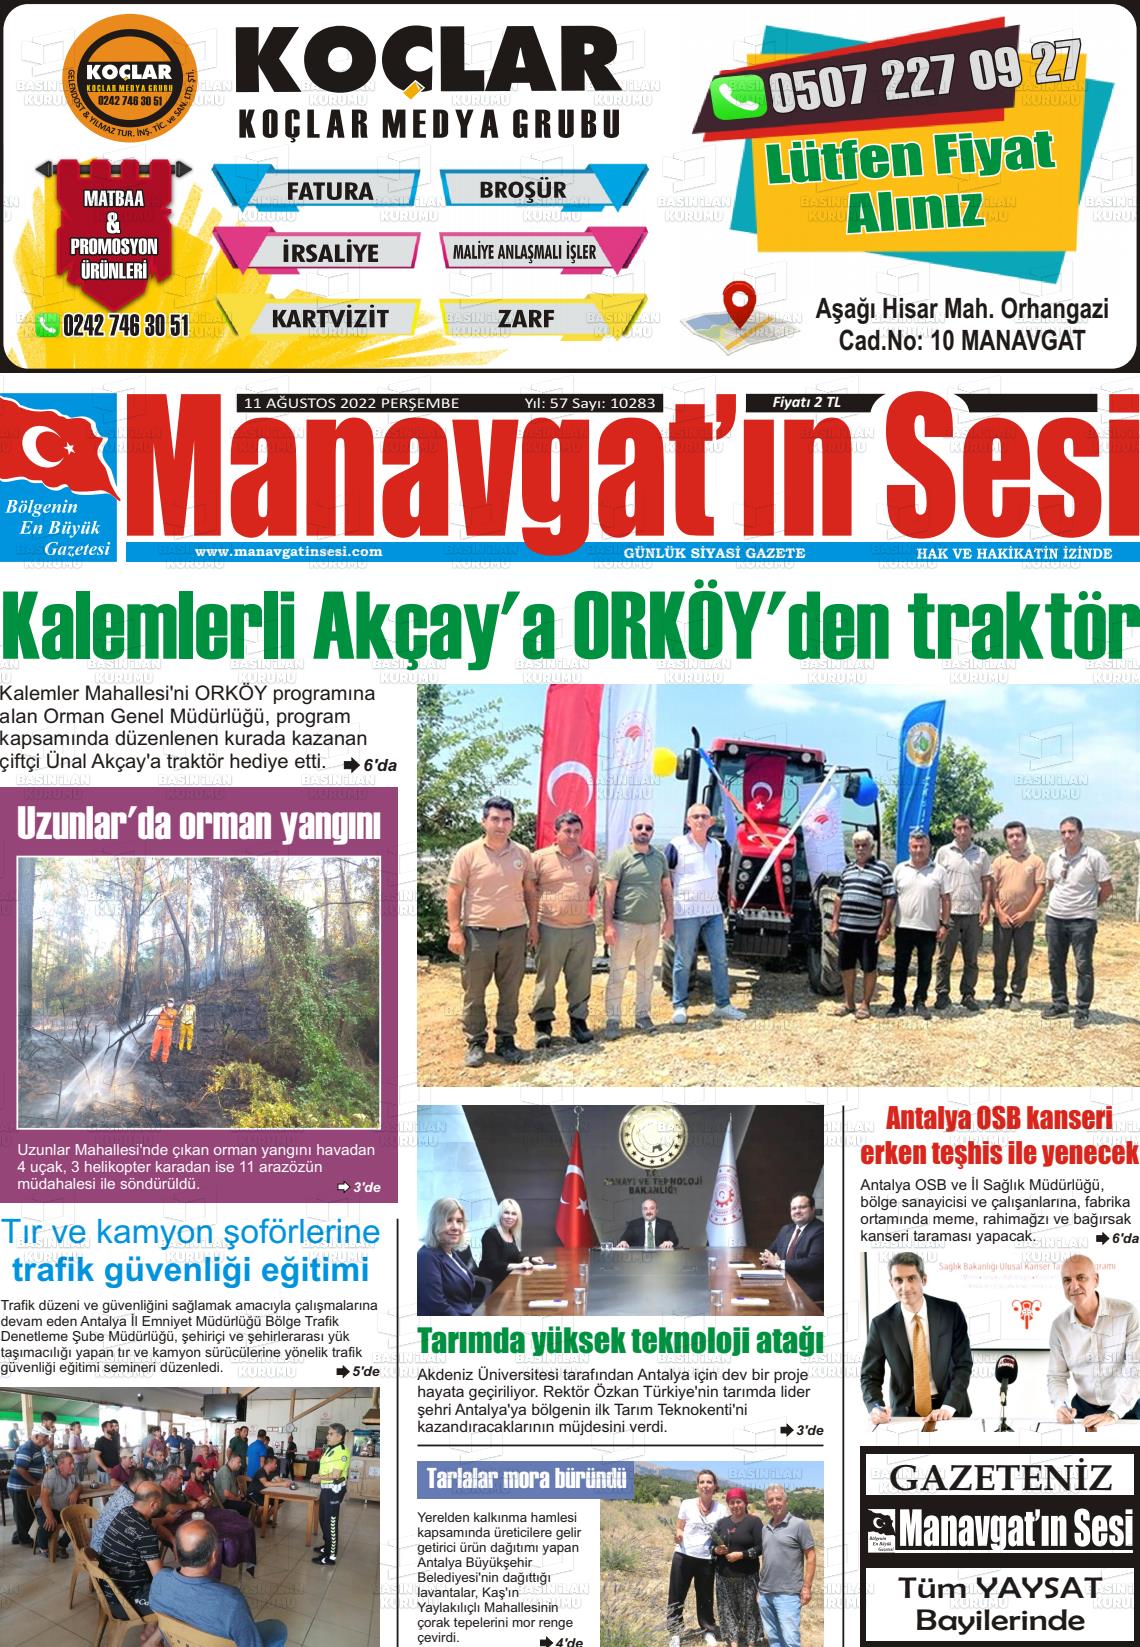 11 Ağustos 2022 Manavgat'ın Sesi Gazete Manşeti